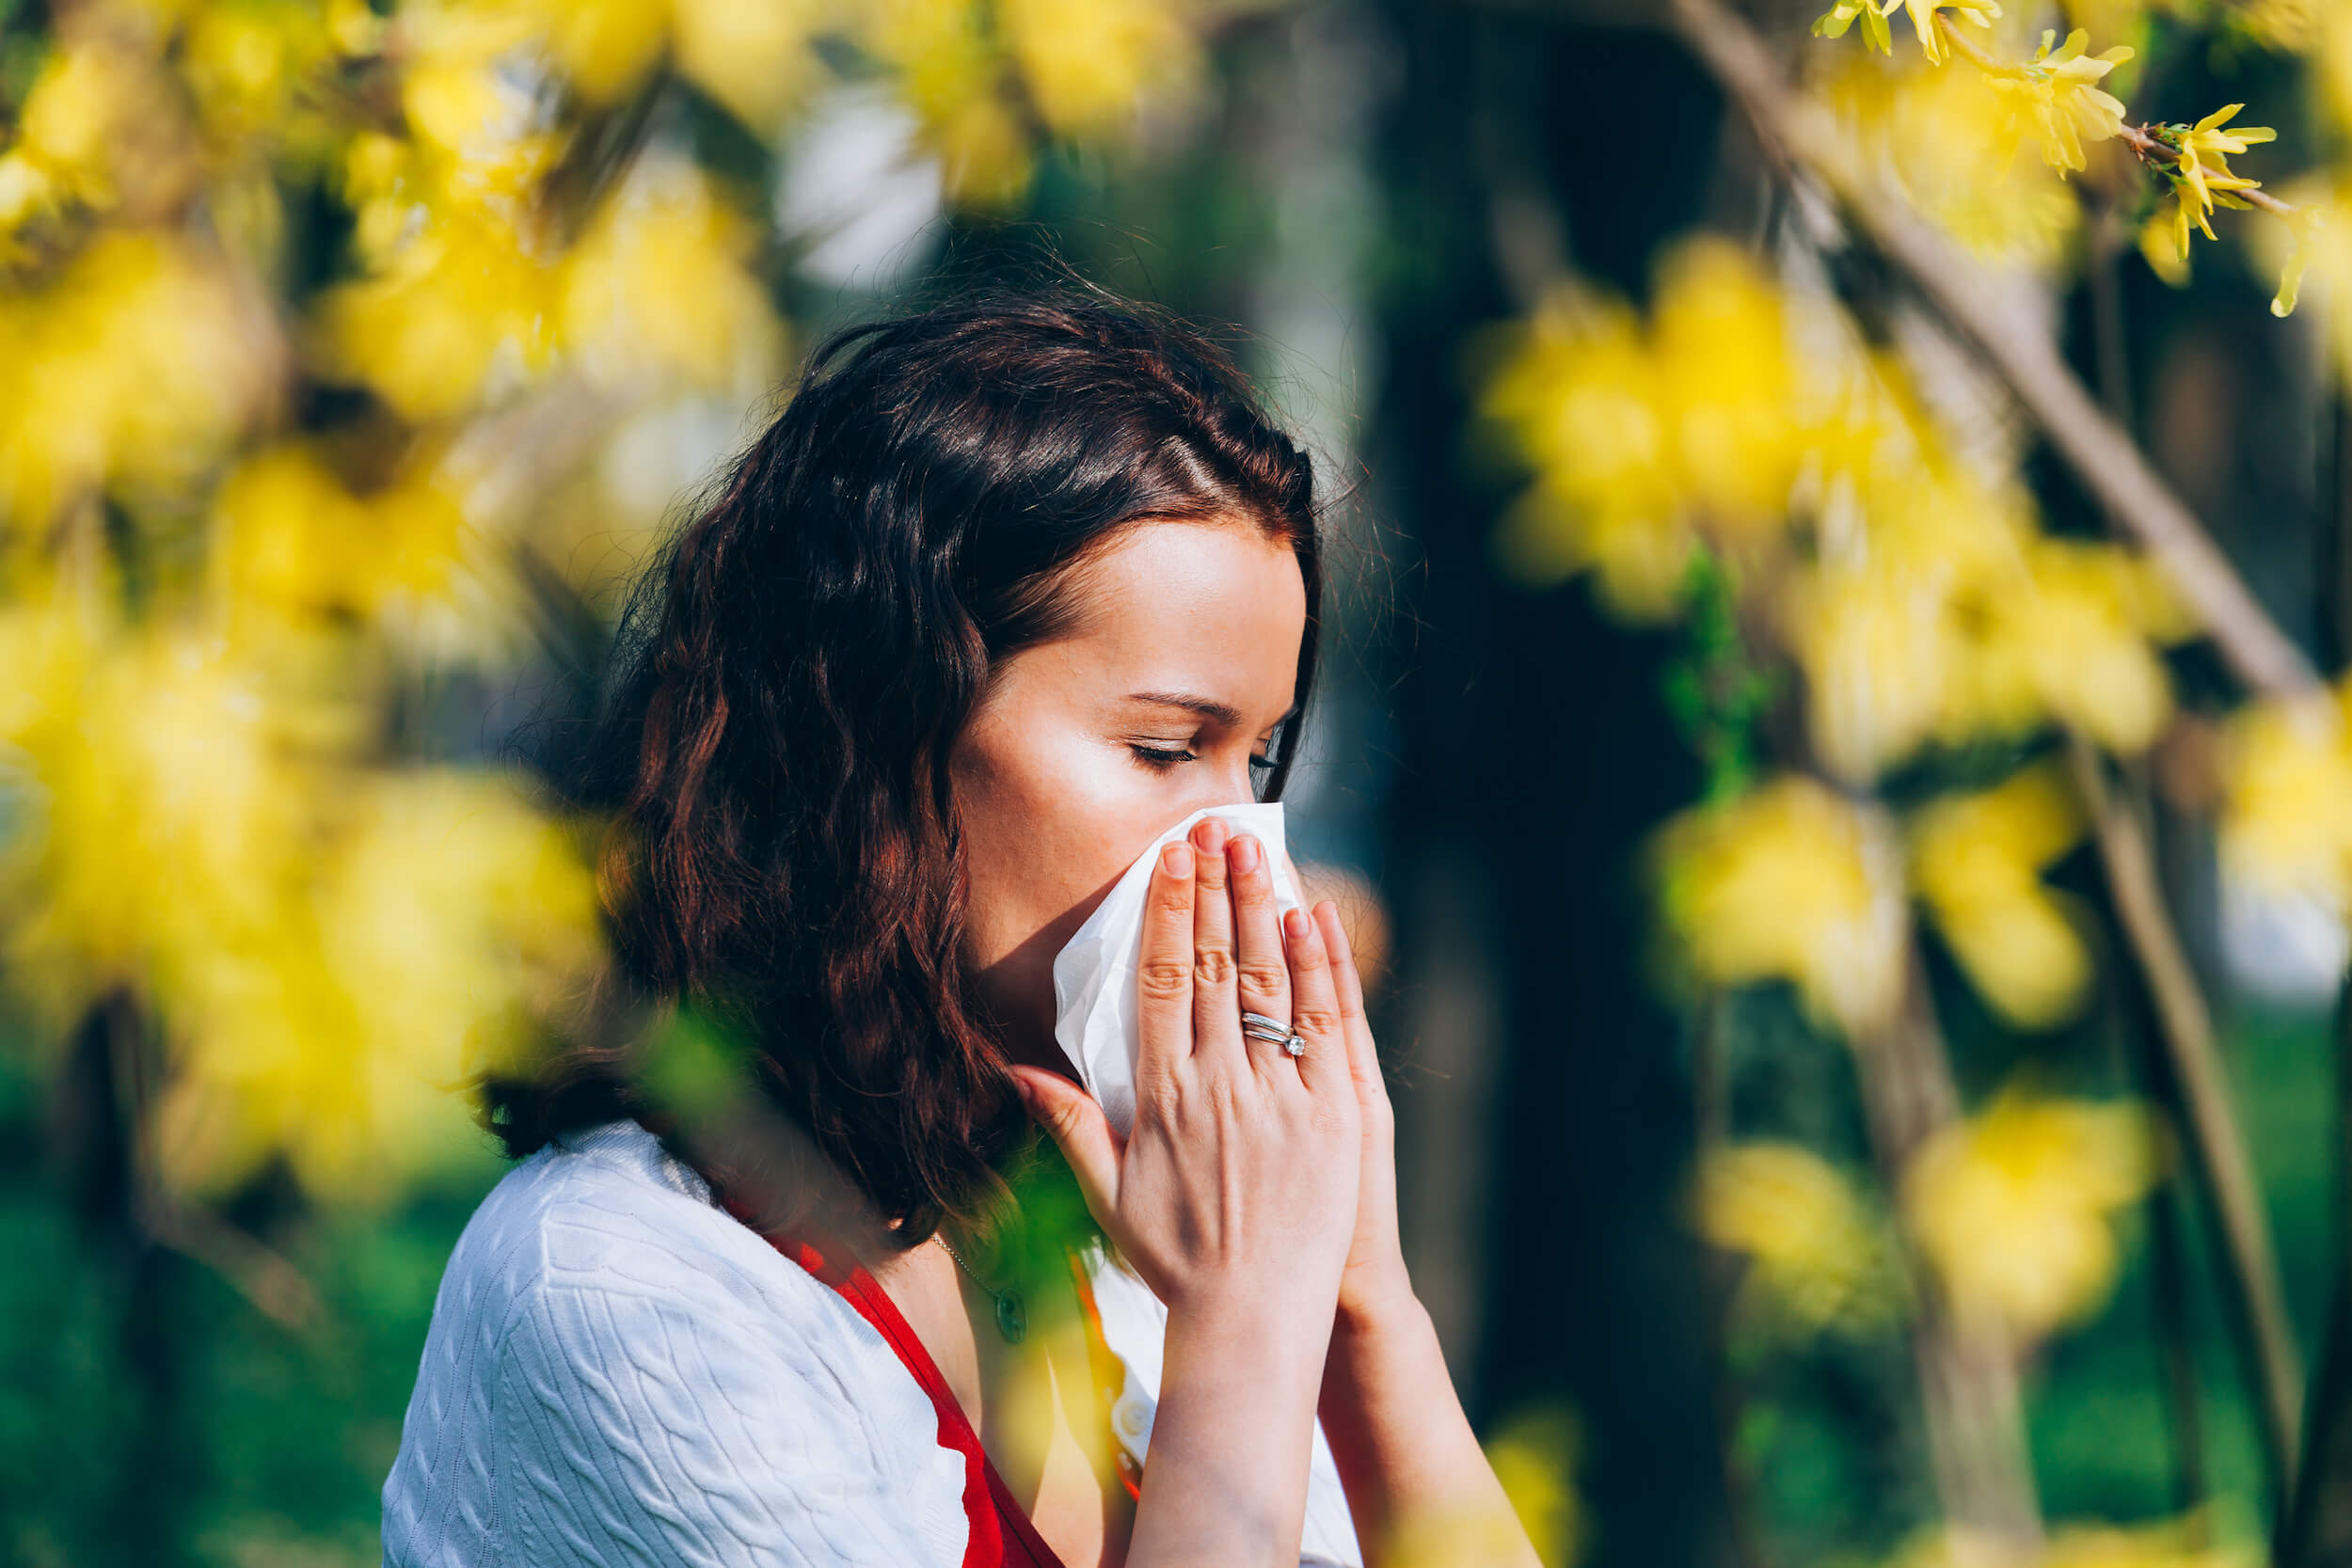 kobieta zmagająca się z alergią w otoczeniu żółtych krzewów